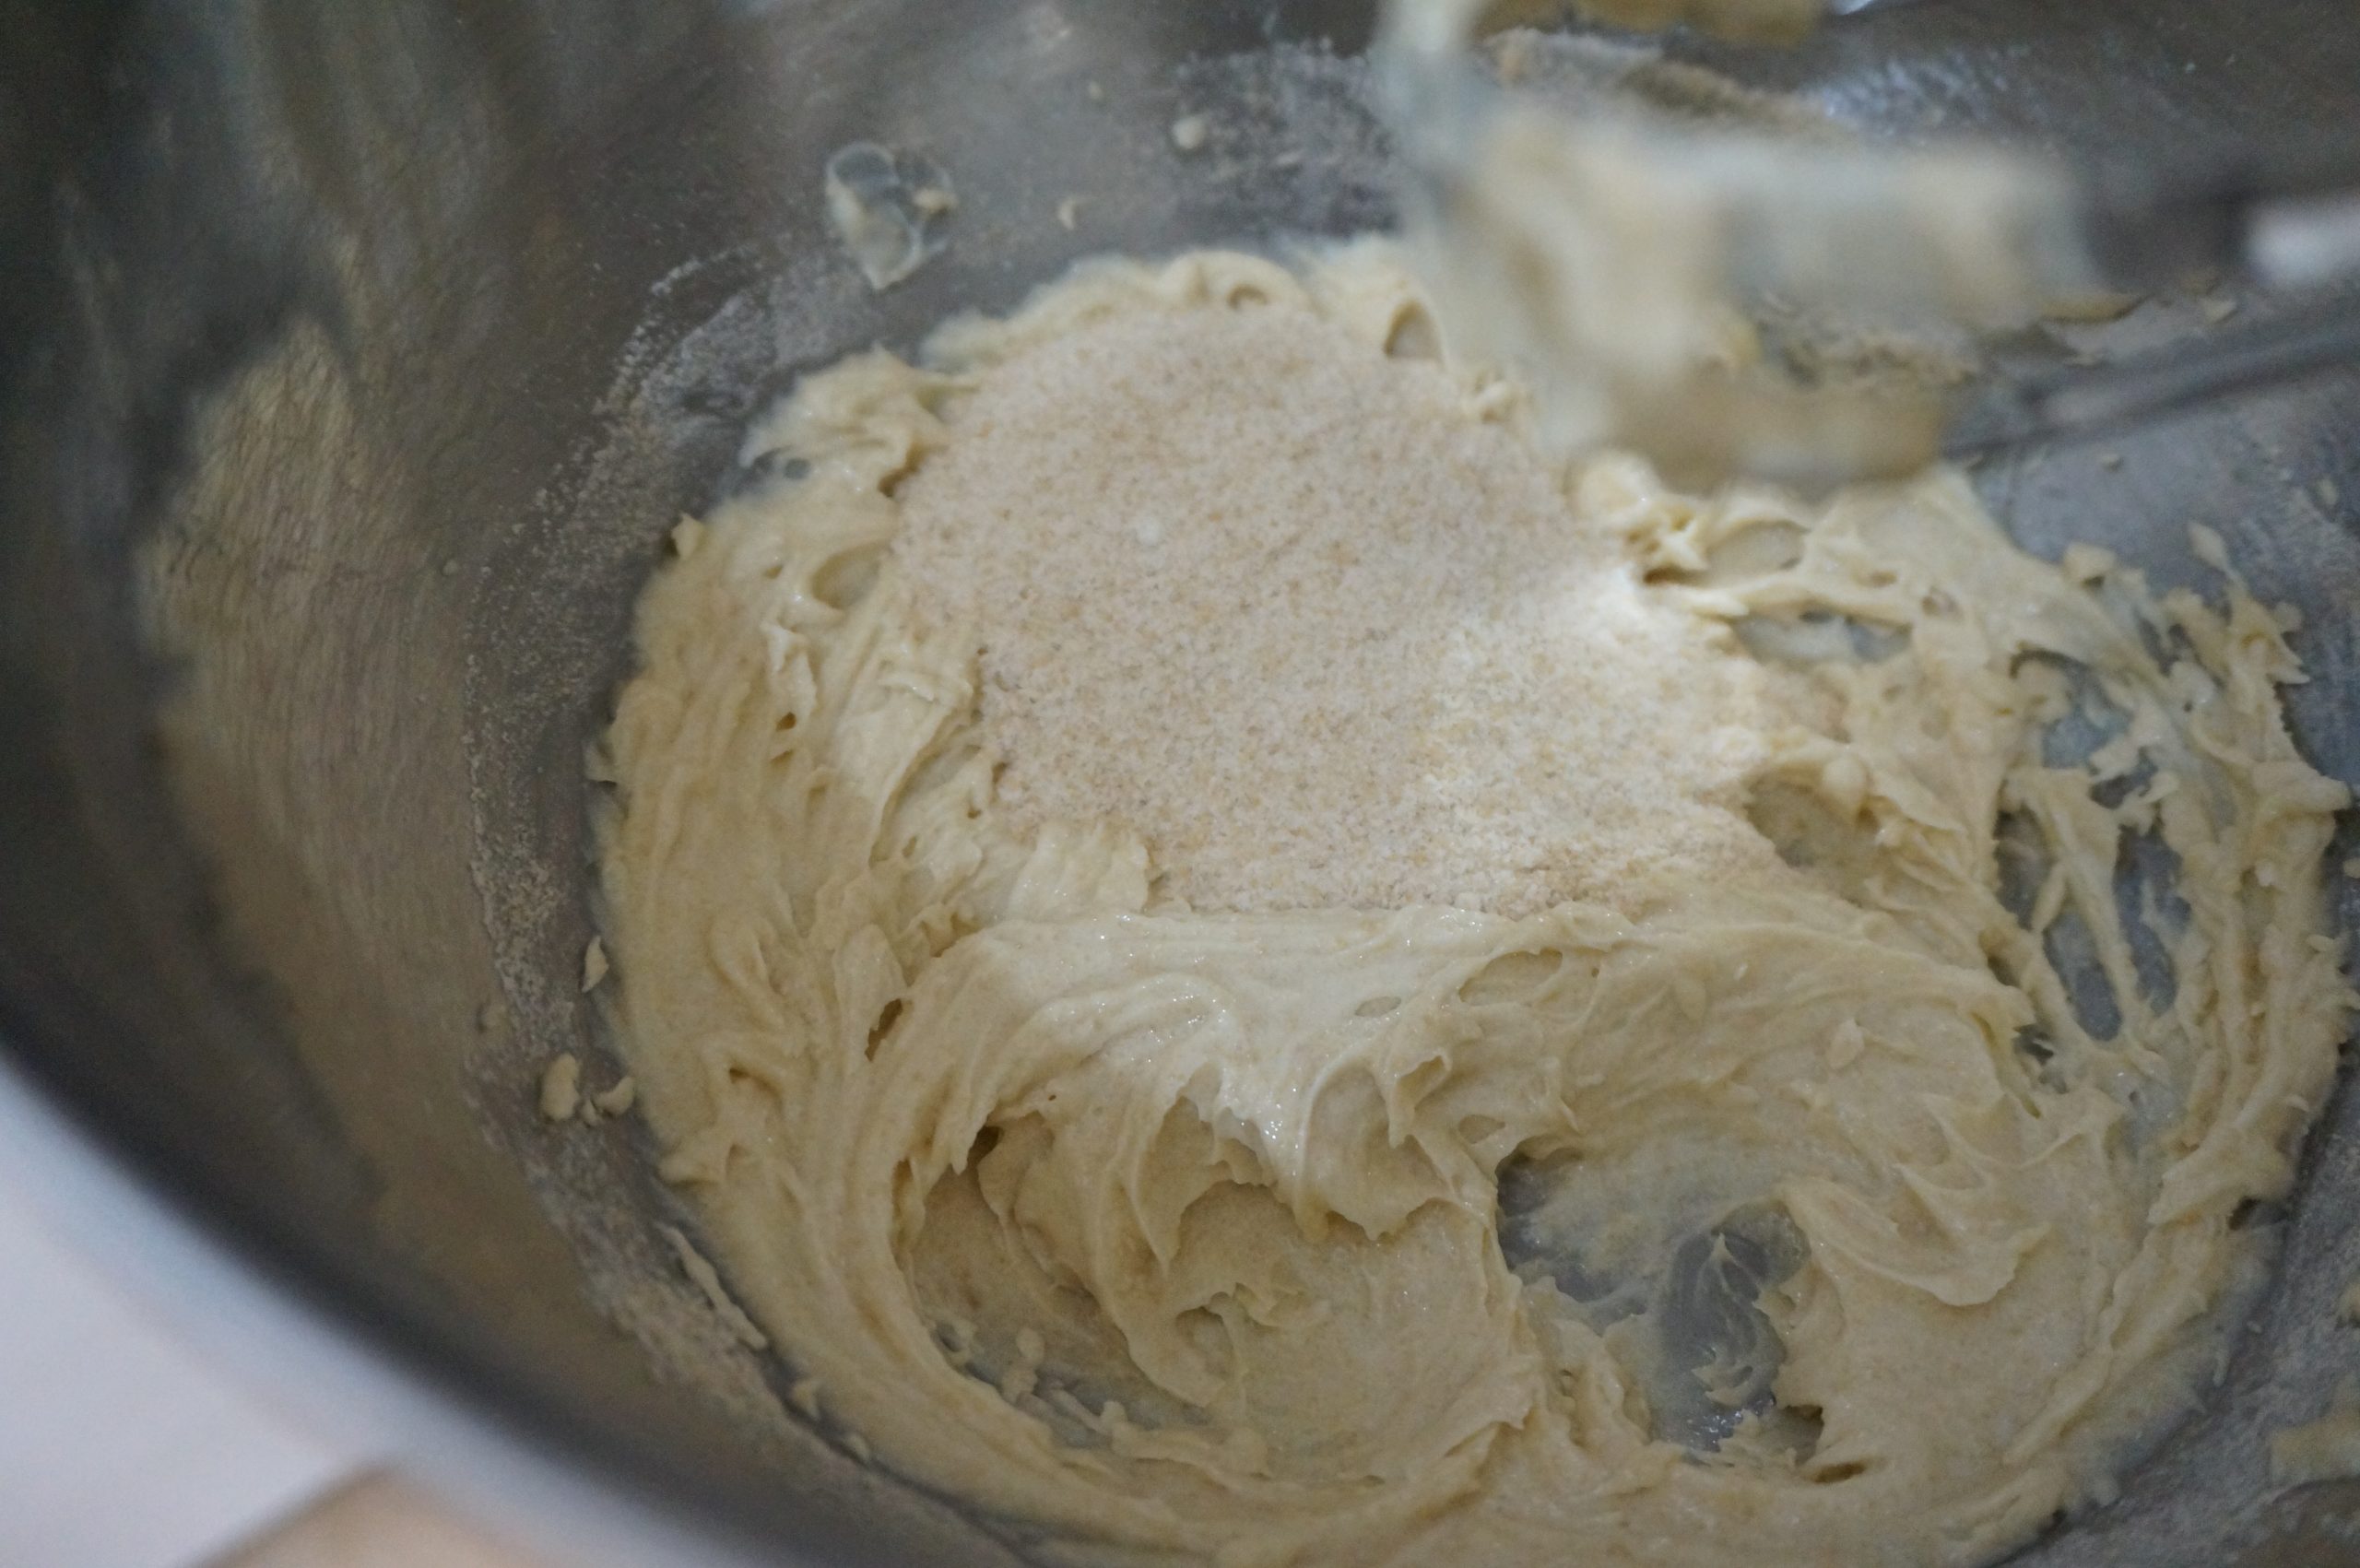 【パウンドケーキ】
バターをボウルに入れて、ミキサーでほぐし、なめらかになるまでホイップする。砂糖を加え、さらに泡立てる。なめらかにふわっとなるまでよく混ぜる。